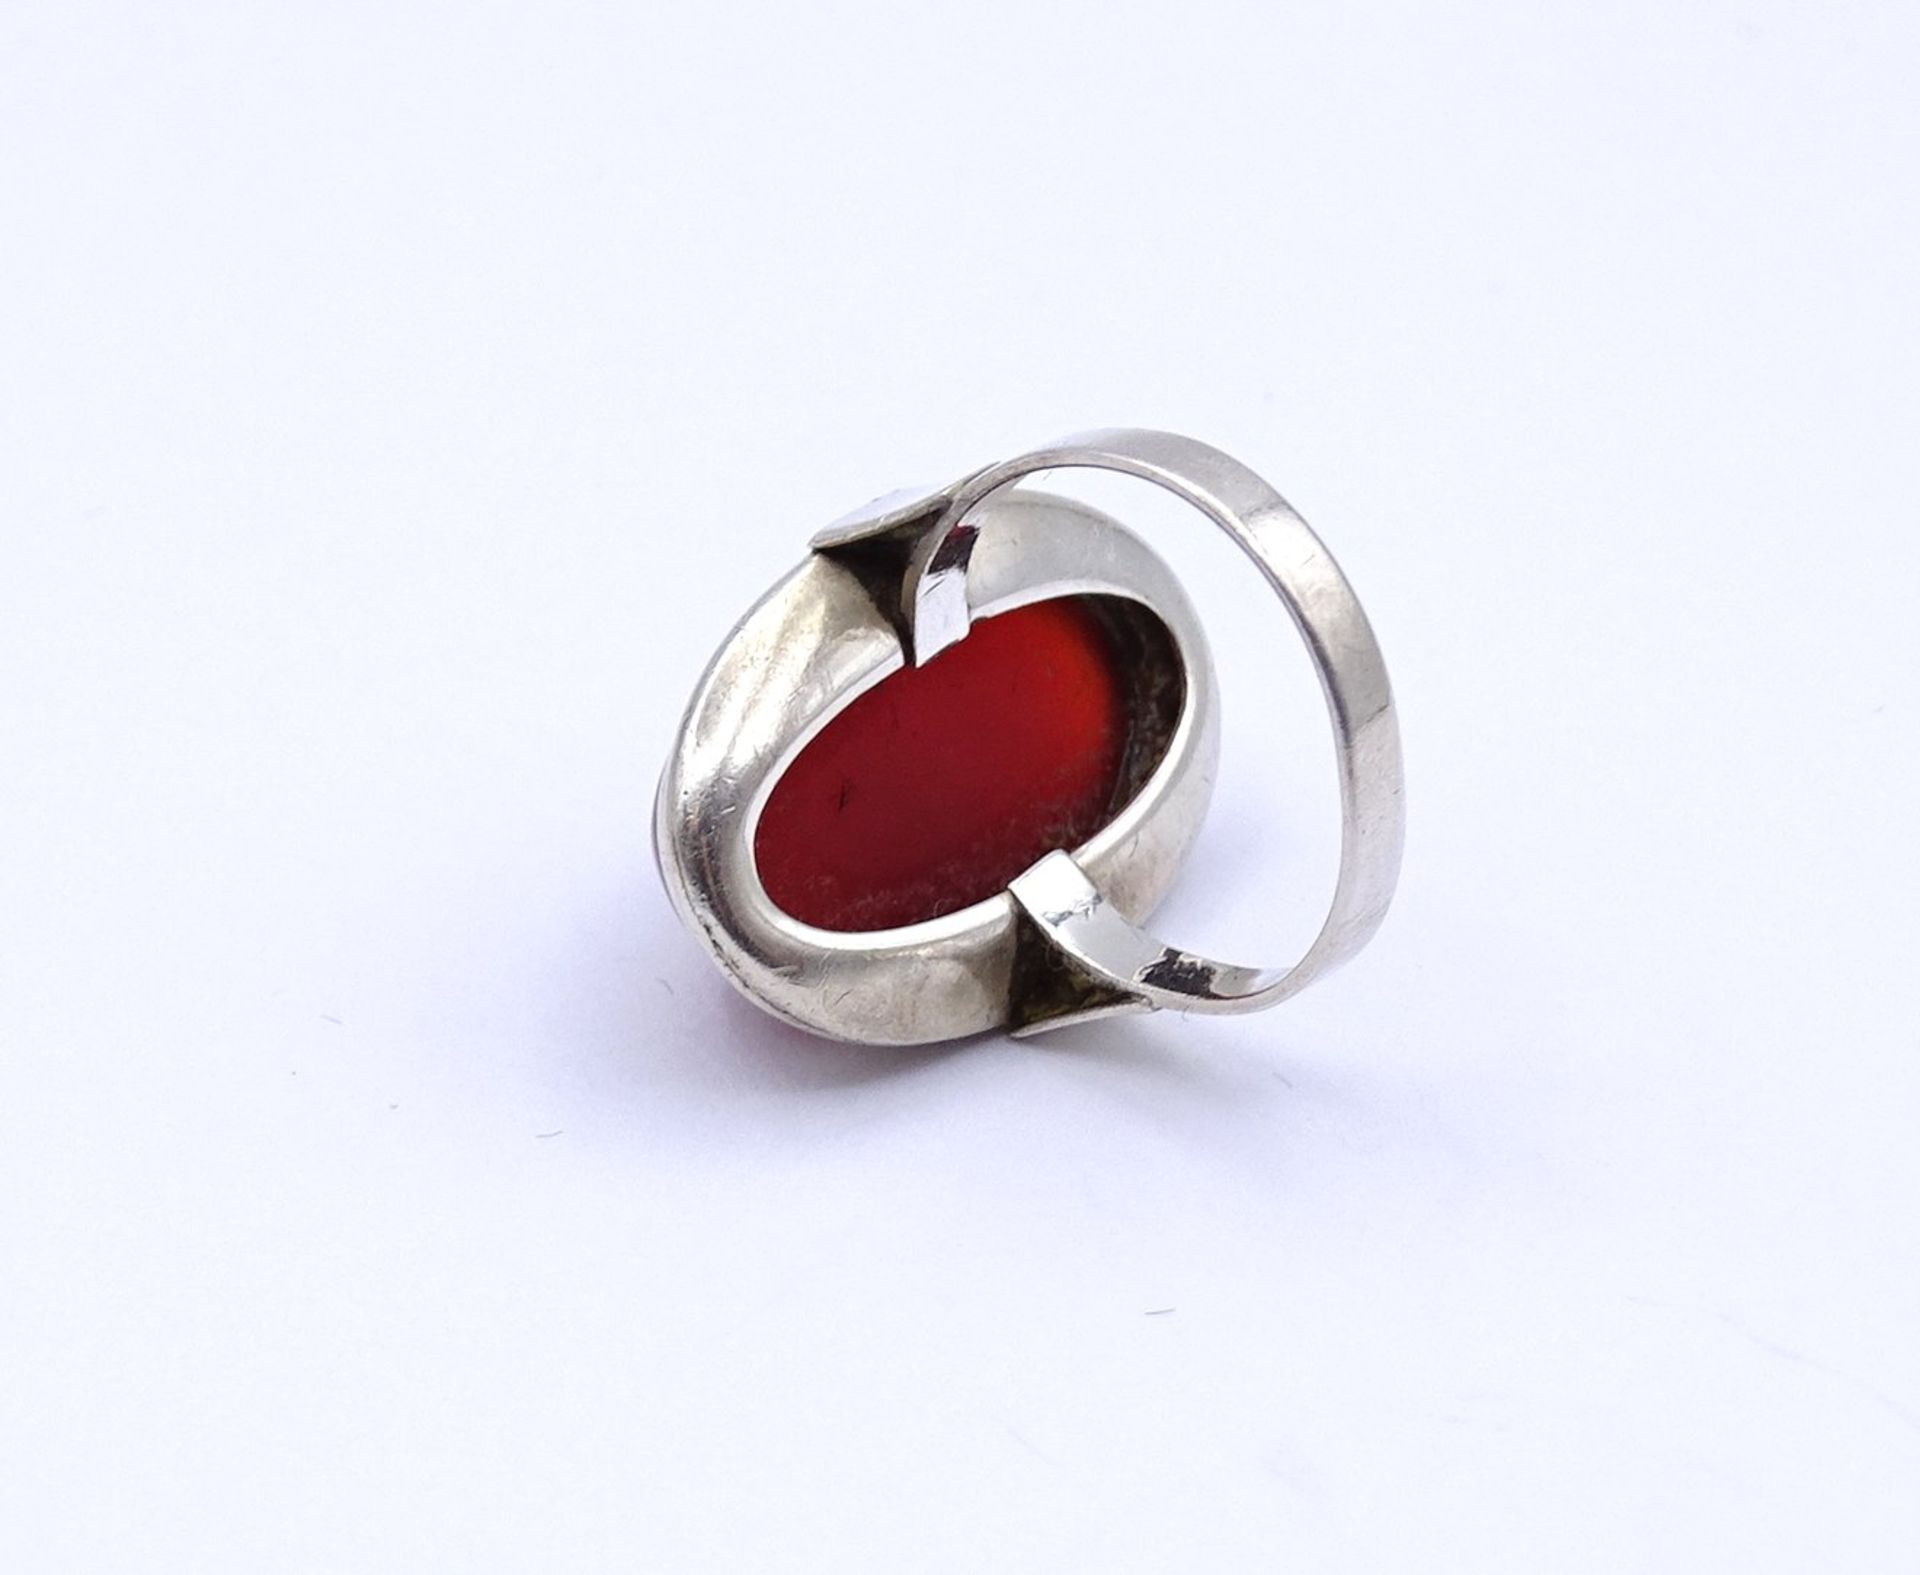 835er Silber Ring mit Karneol Cabochon, 4,6g., RG 51 - Image 3 of 3